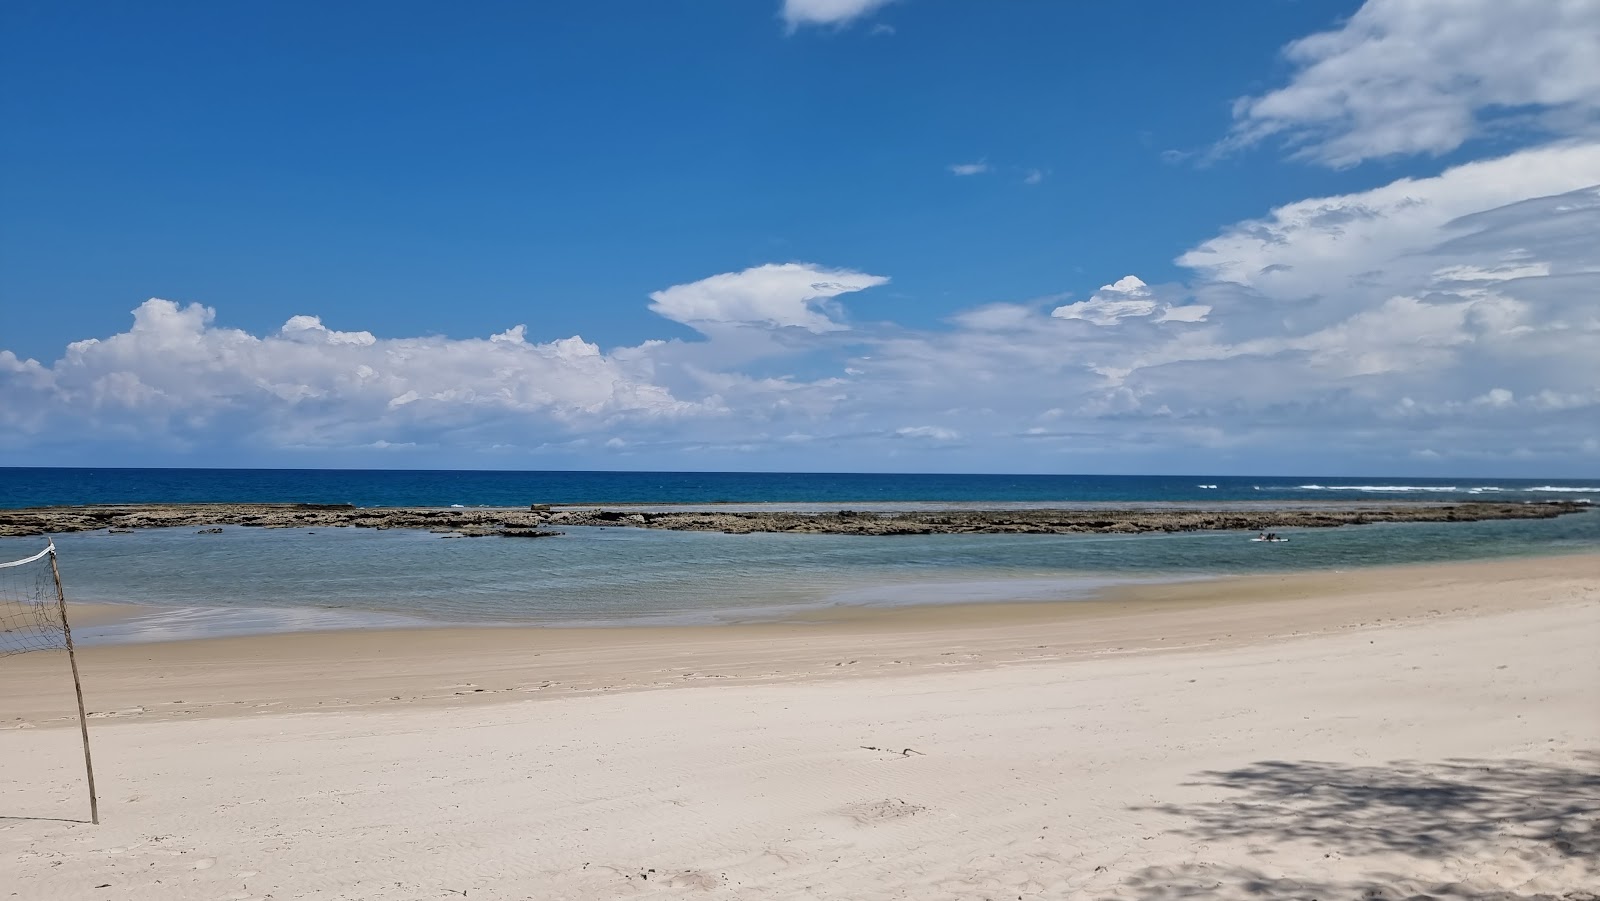 Photo de Kimbiji Beach - endroit populaire parmi les connaisseurs de la détente